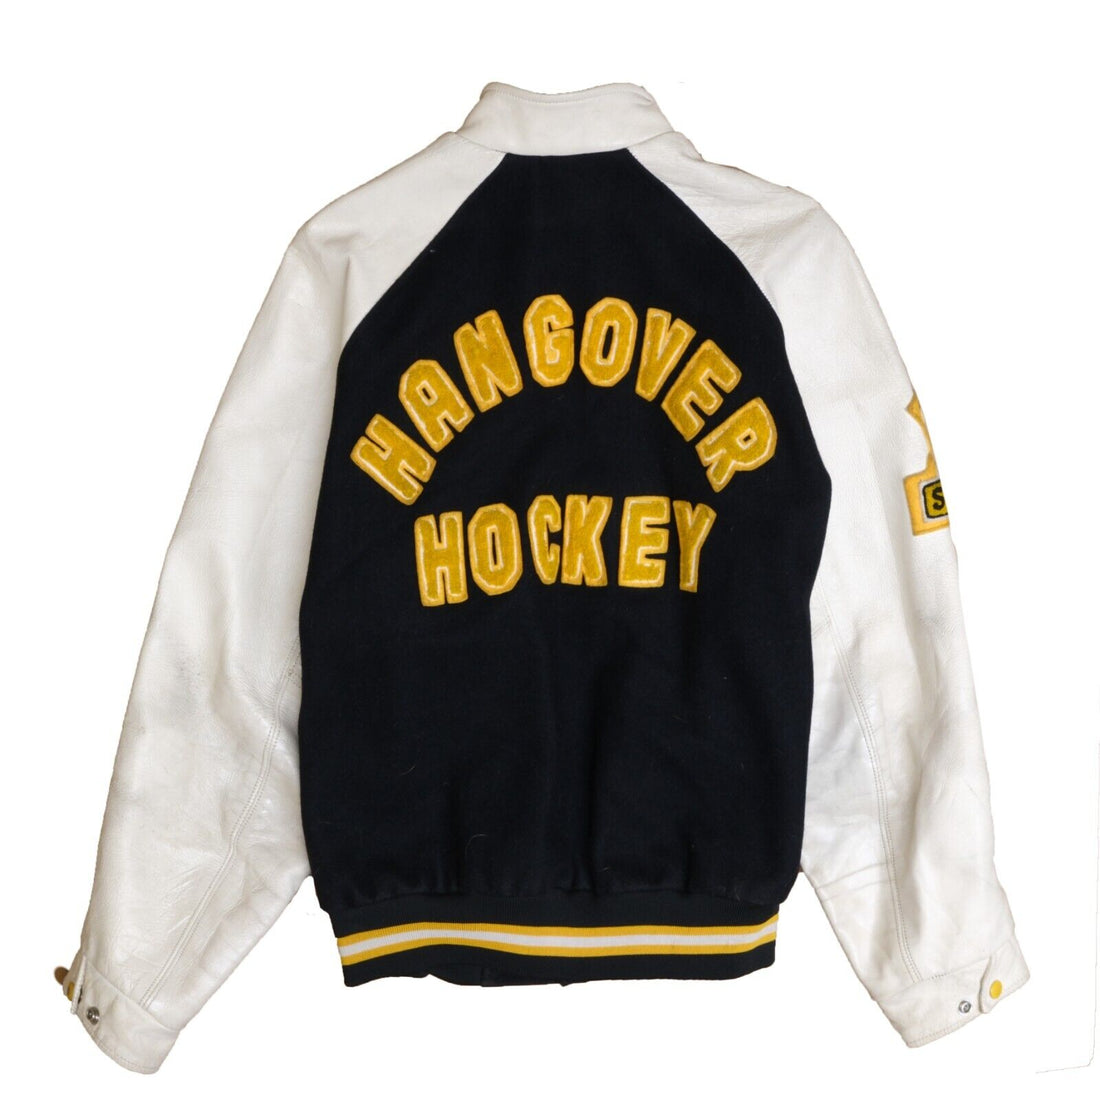 Vintage Hangover Hockey Leather Wool Varsity Jacket Size 42